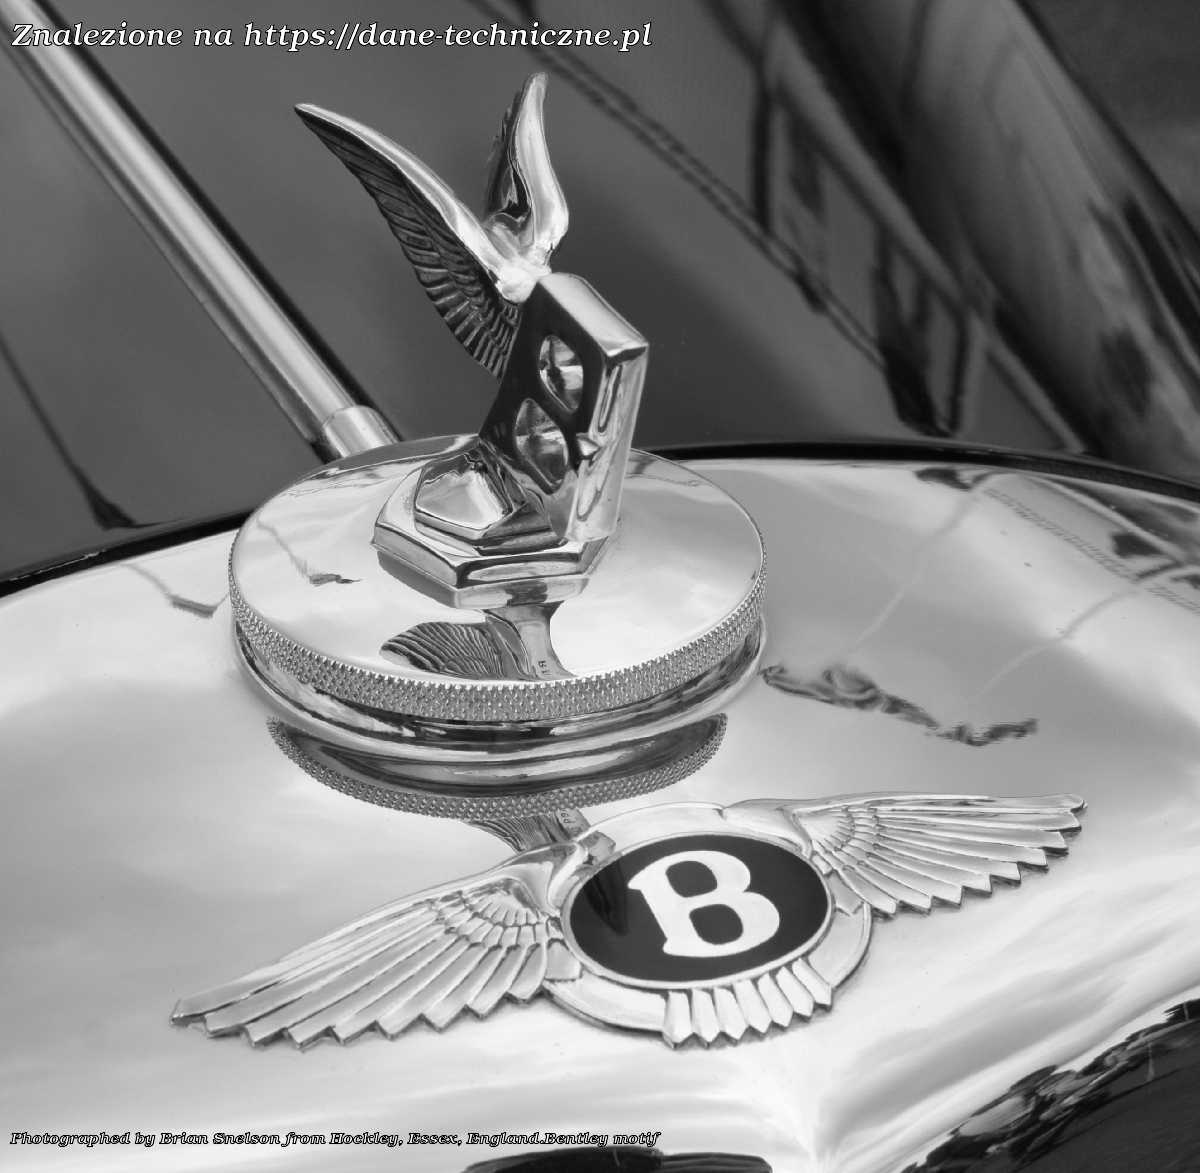 Bentley Bentayga I na dane-techniczne.pl